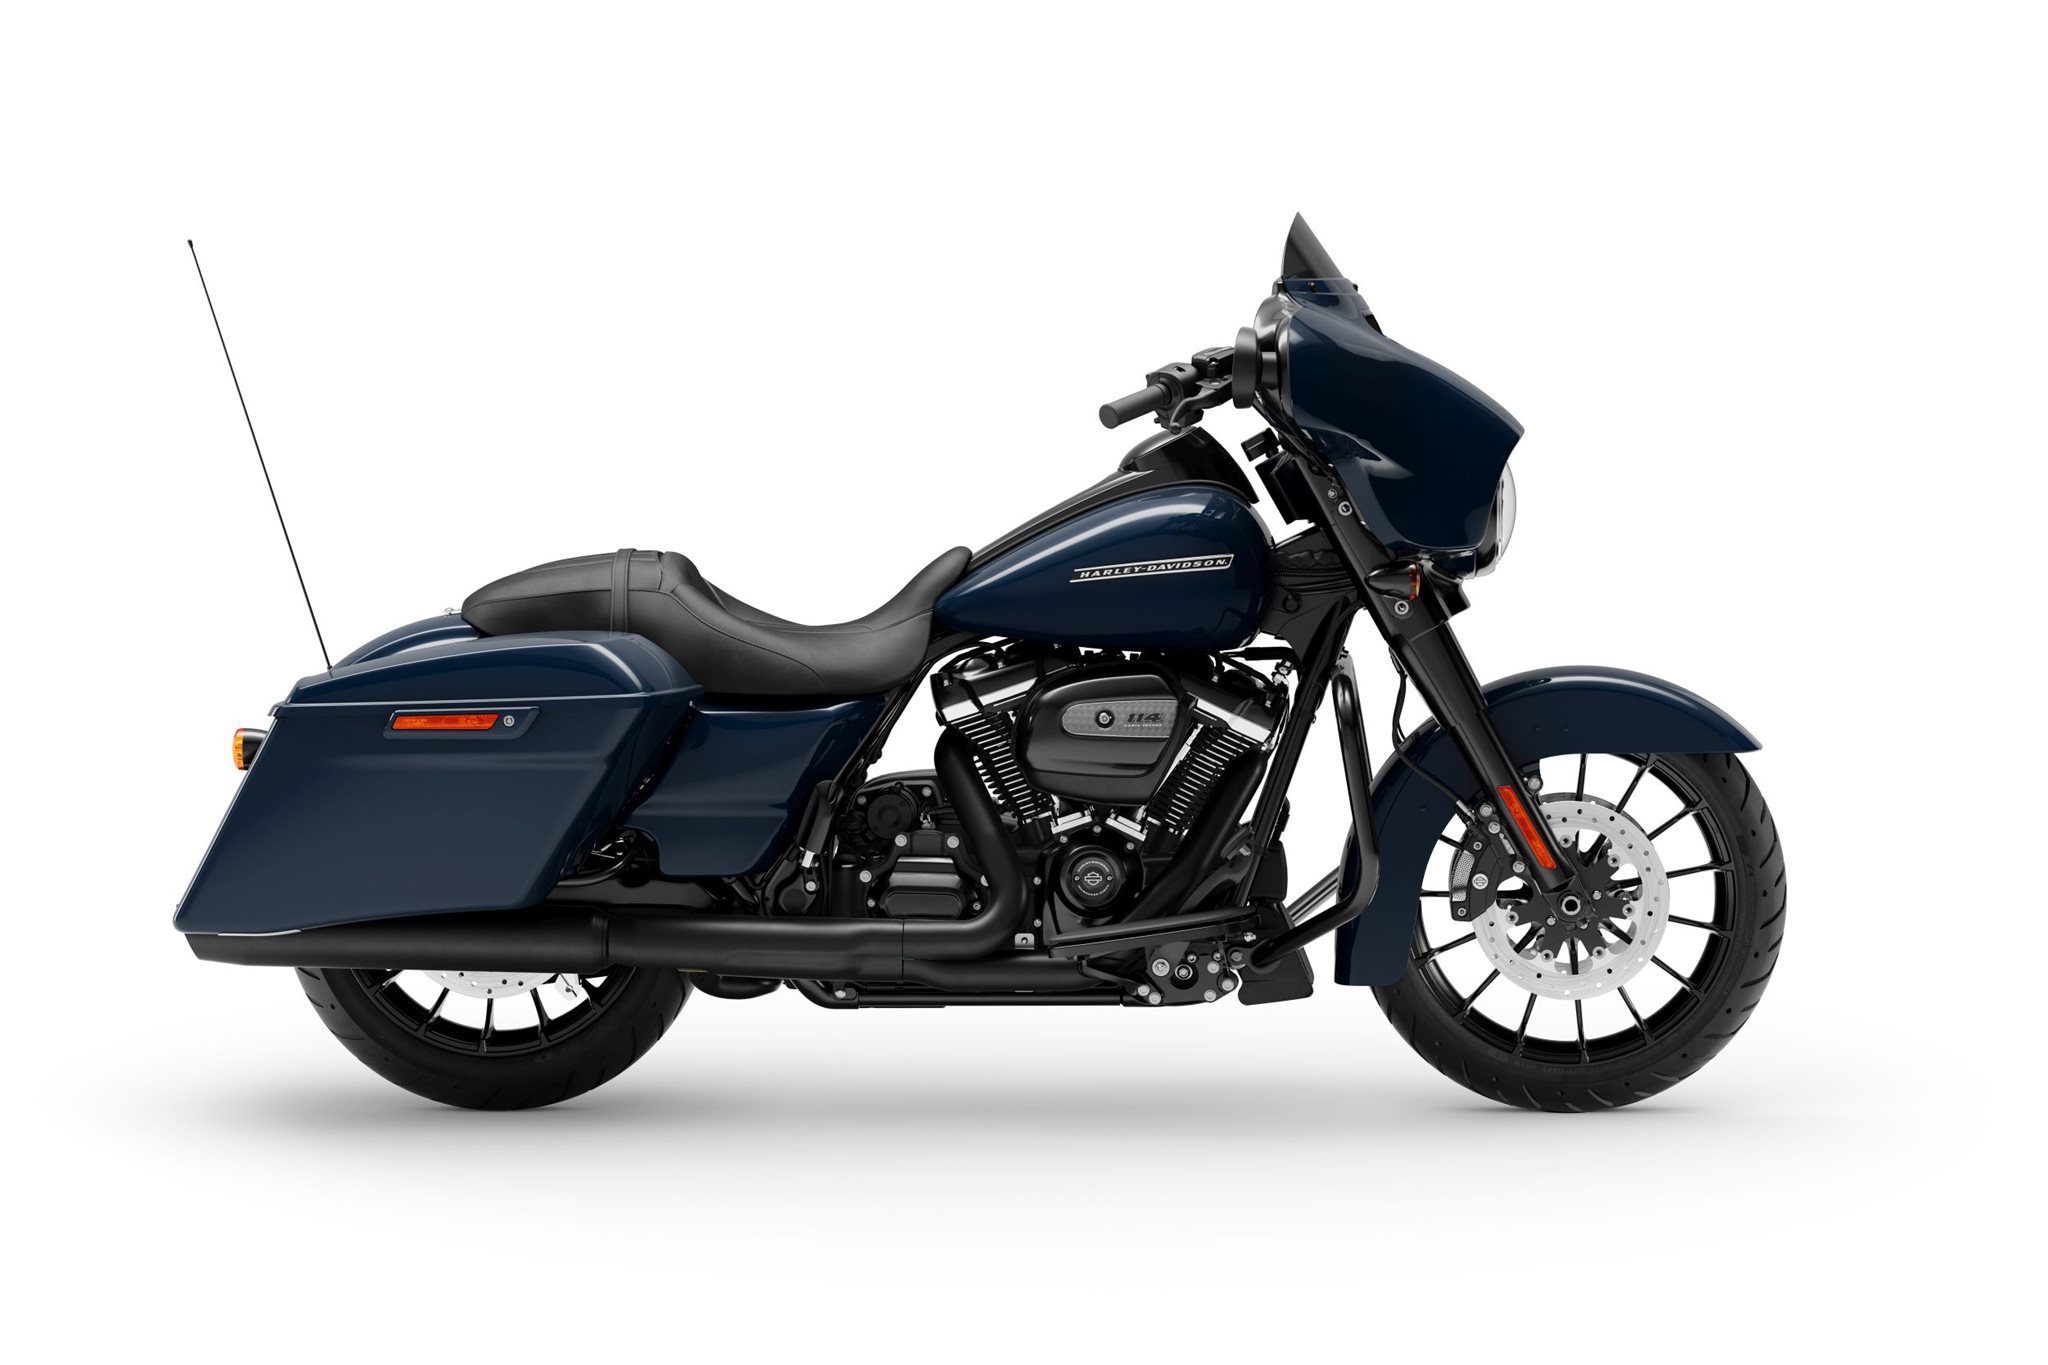 Motorrad Vergleich Harley Davidson Touring Street Glide Special Flhxs 2020 Vs Indian Chieftain Dark Horse 2020